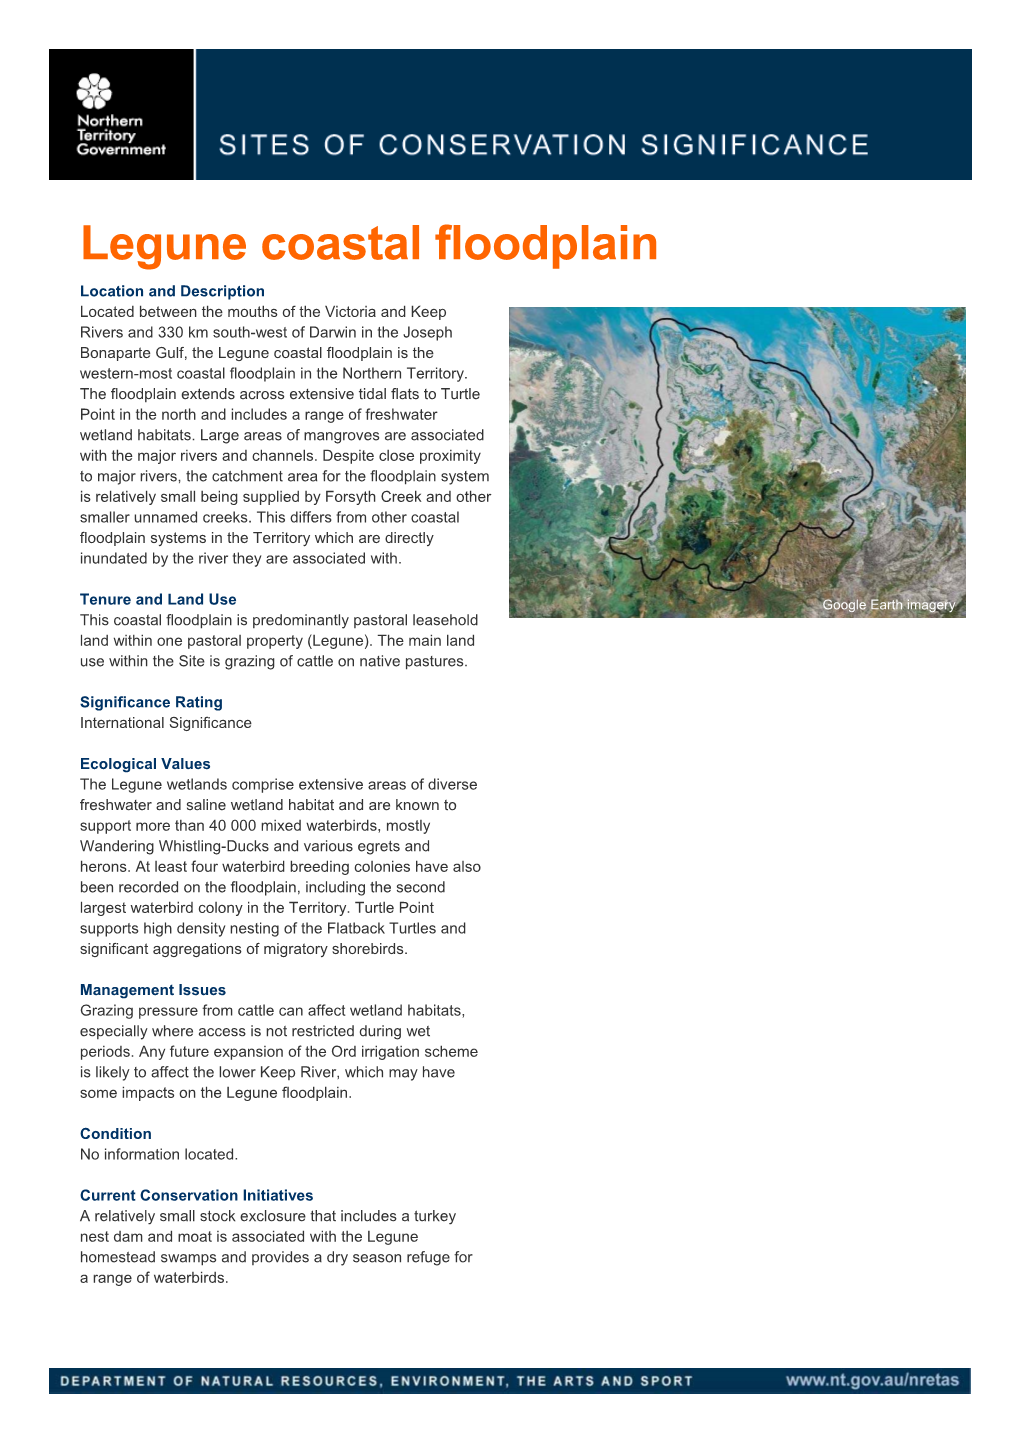 Legune Coastal Floodplain